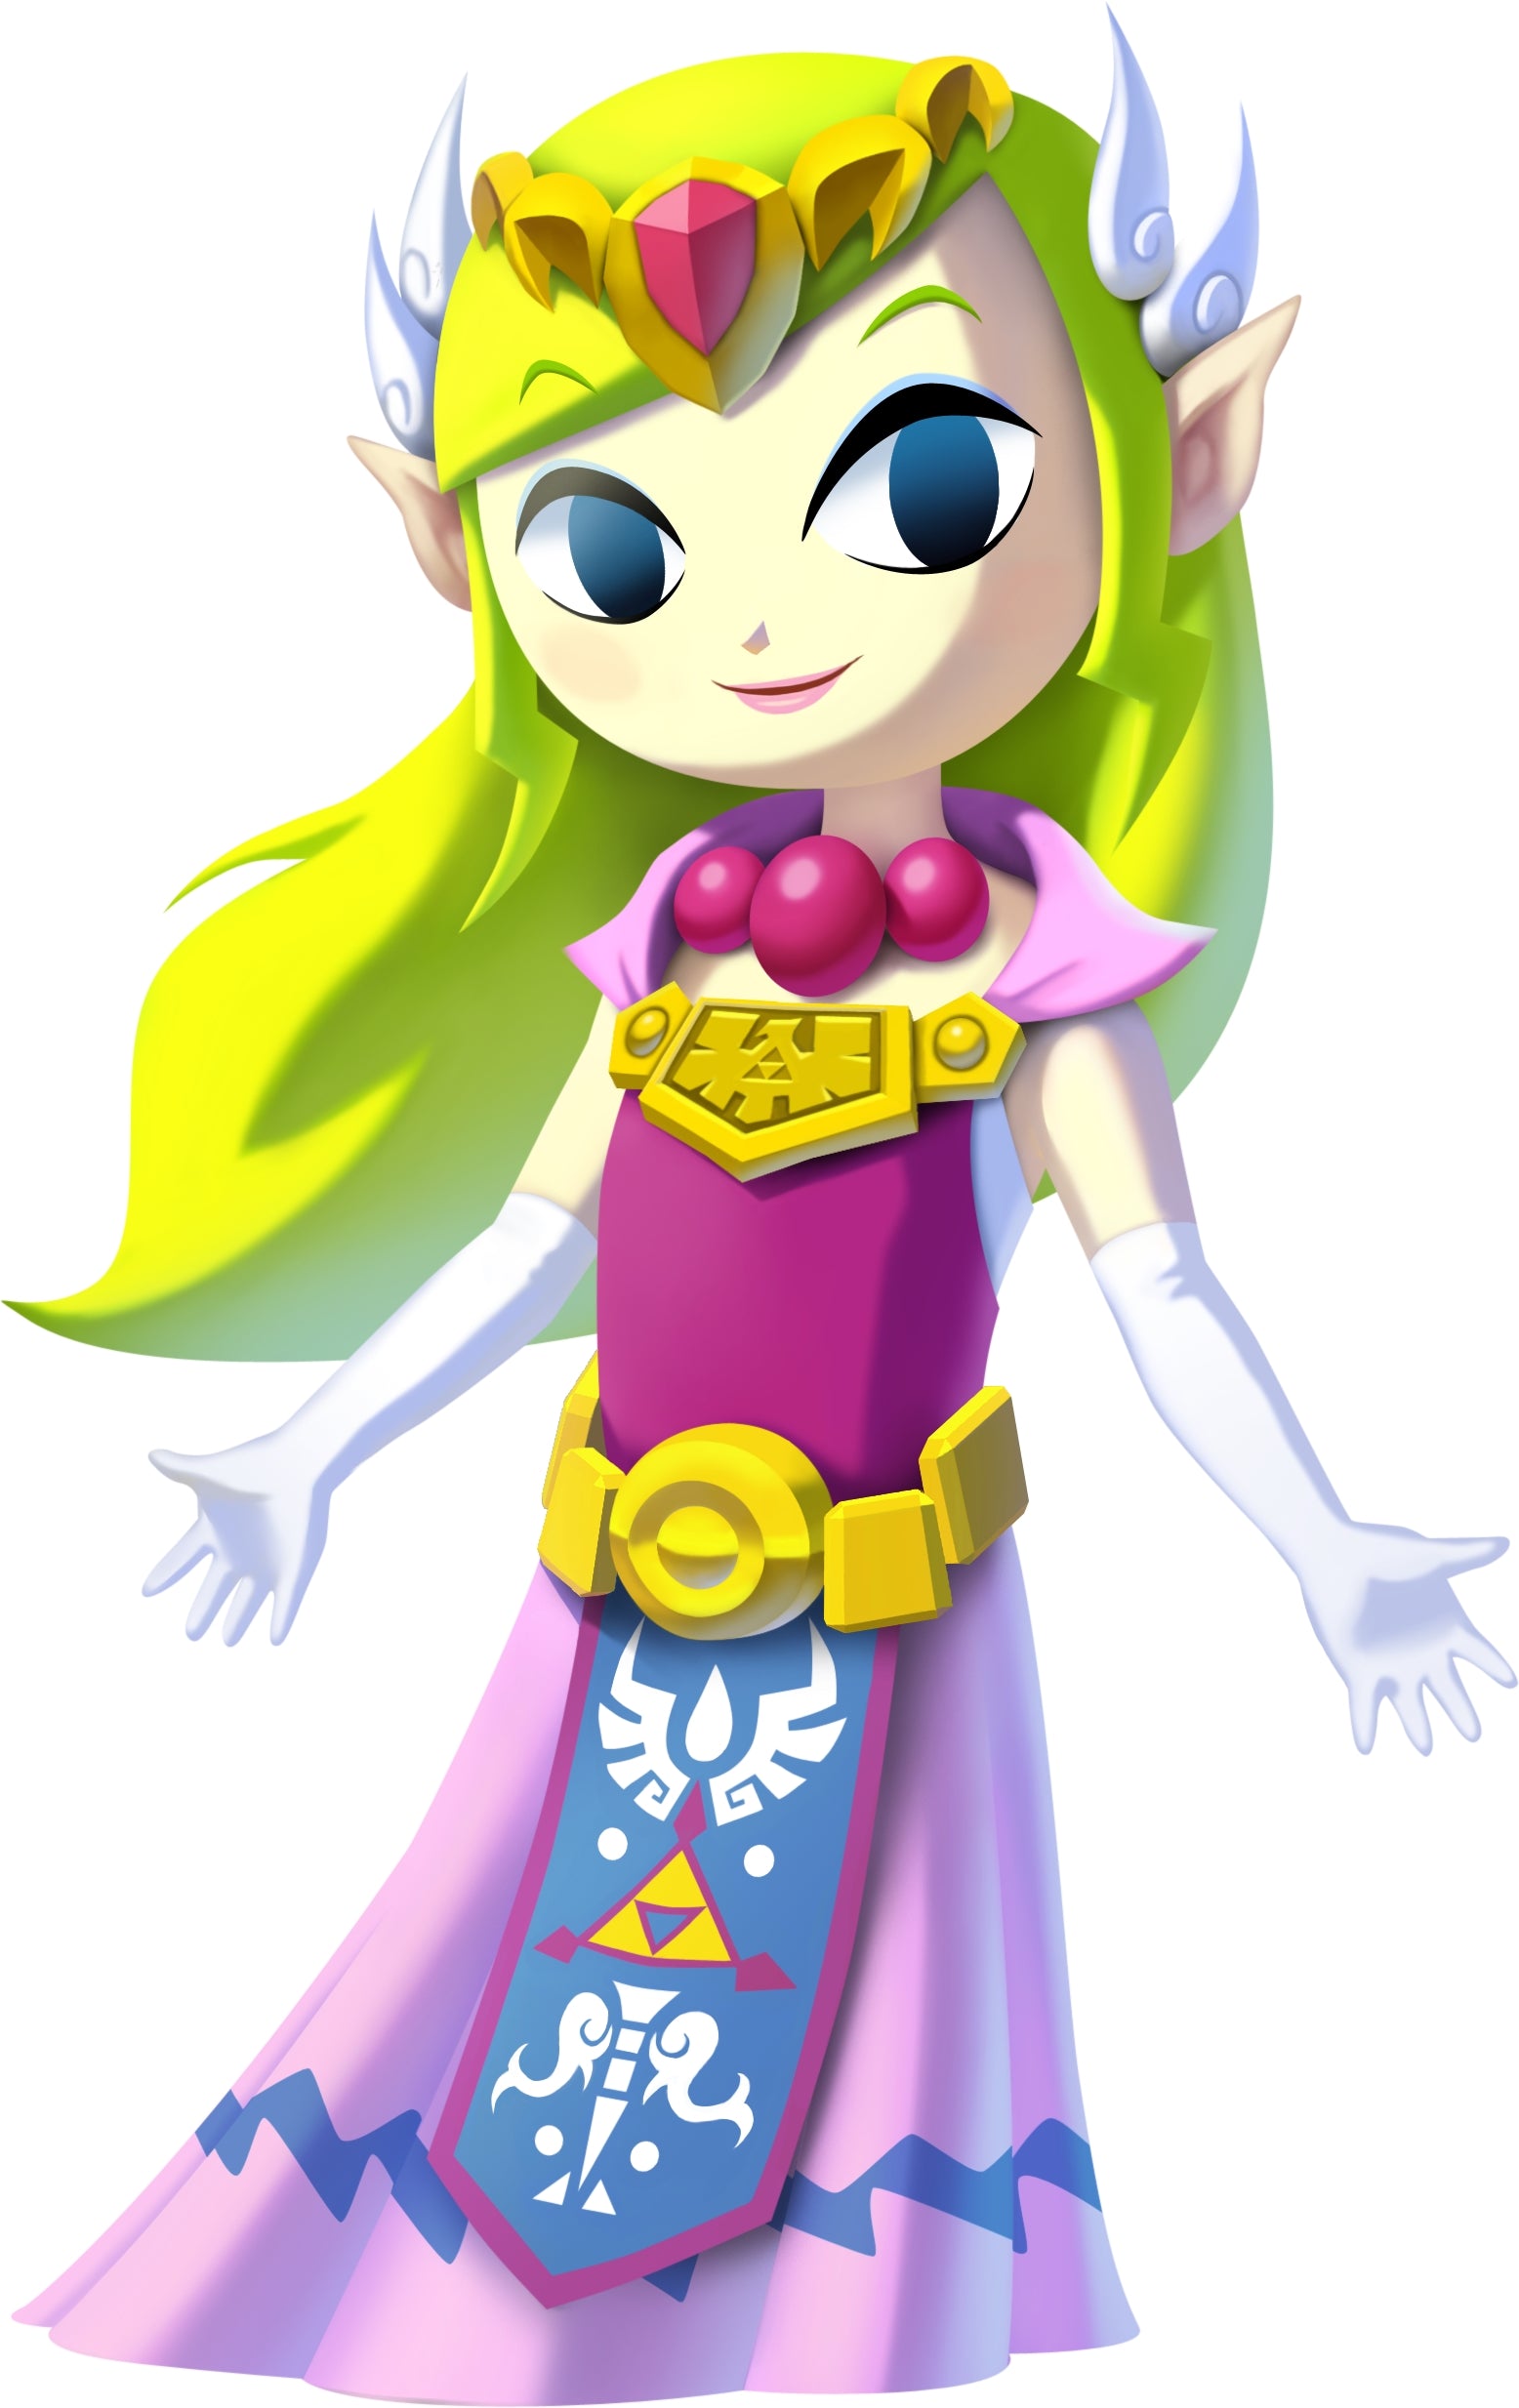 Zelda (Wind Waker) - 30th Anniversary The Legend of Zelda Series